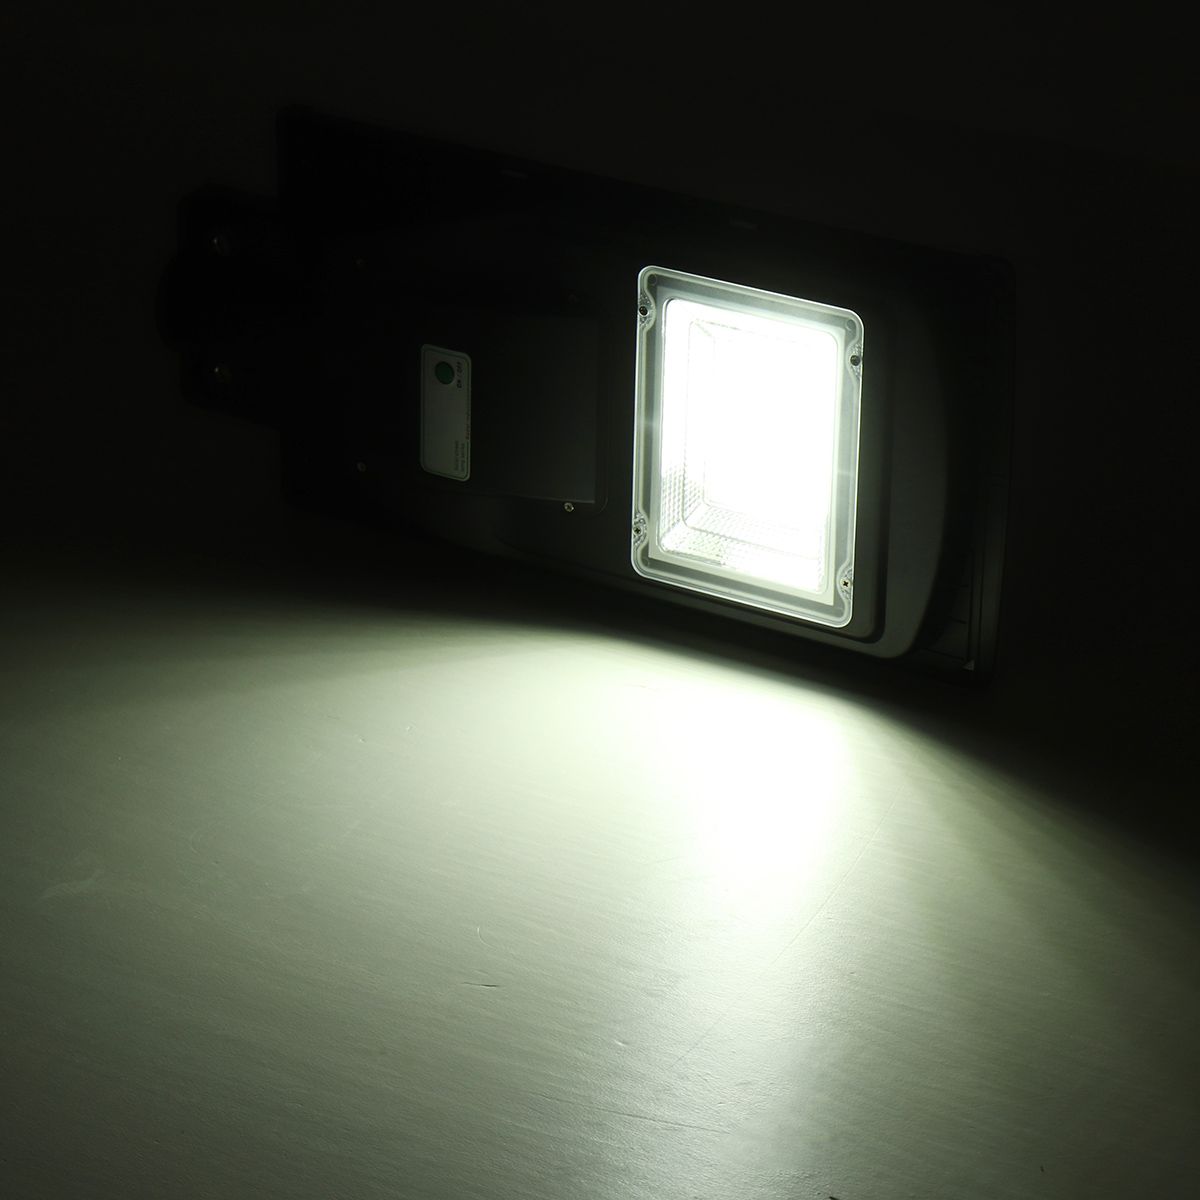 80W-LED-Solar-Powered-Wall-Street-Light-PIR-Motion-Outdoor-Garden-Lamp-1564800